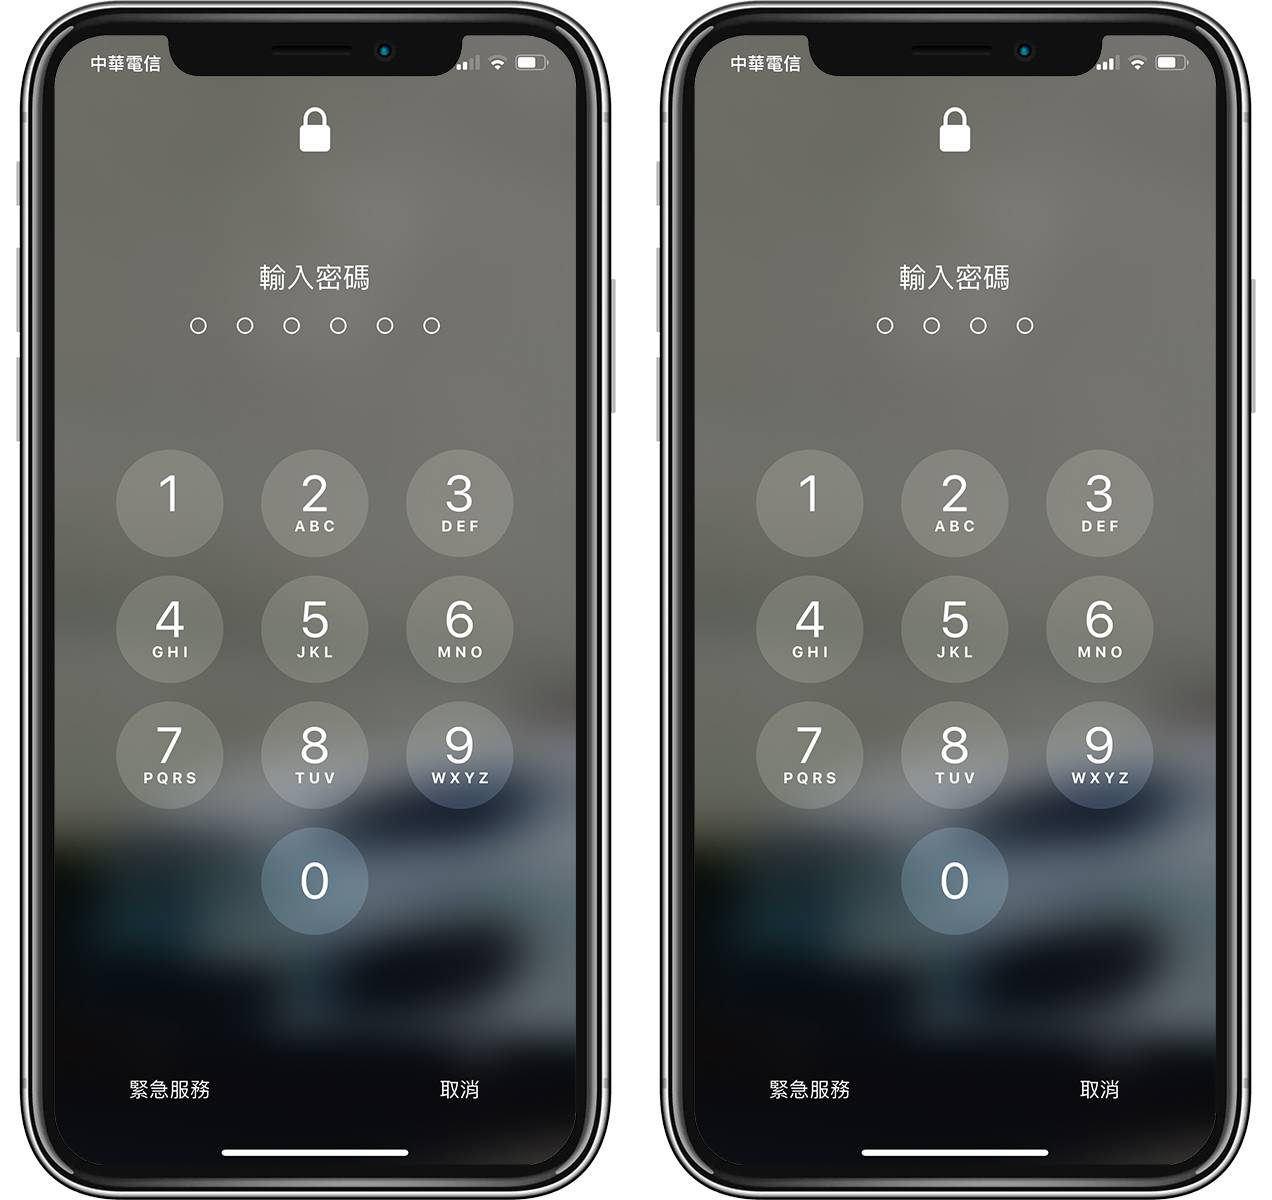 技巧/将 iPhone 解锁密码改为 4 码数字或英文密码